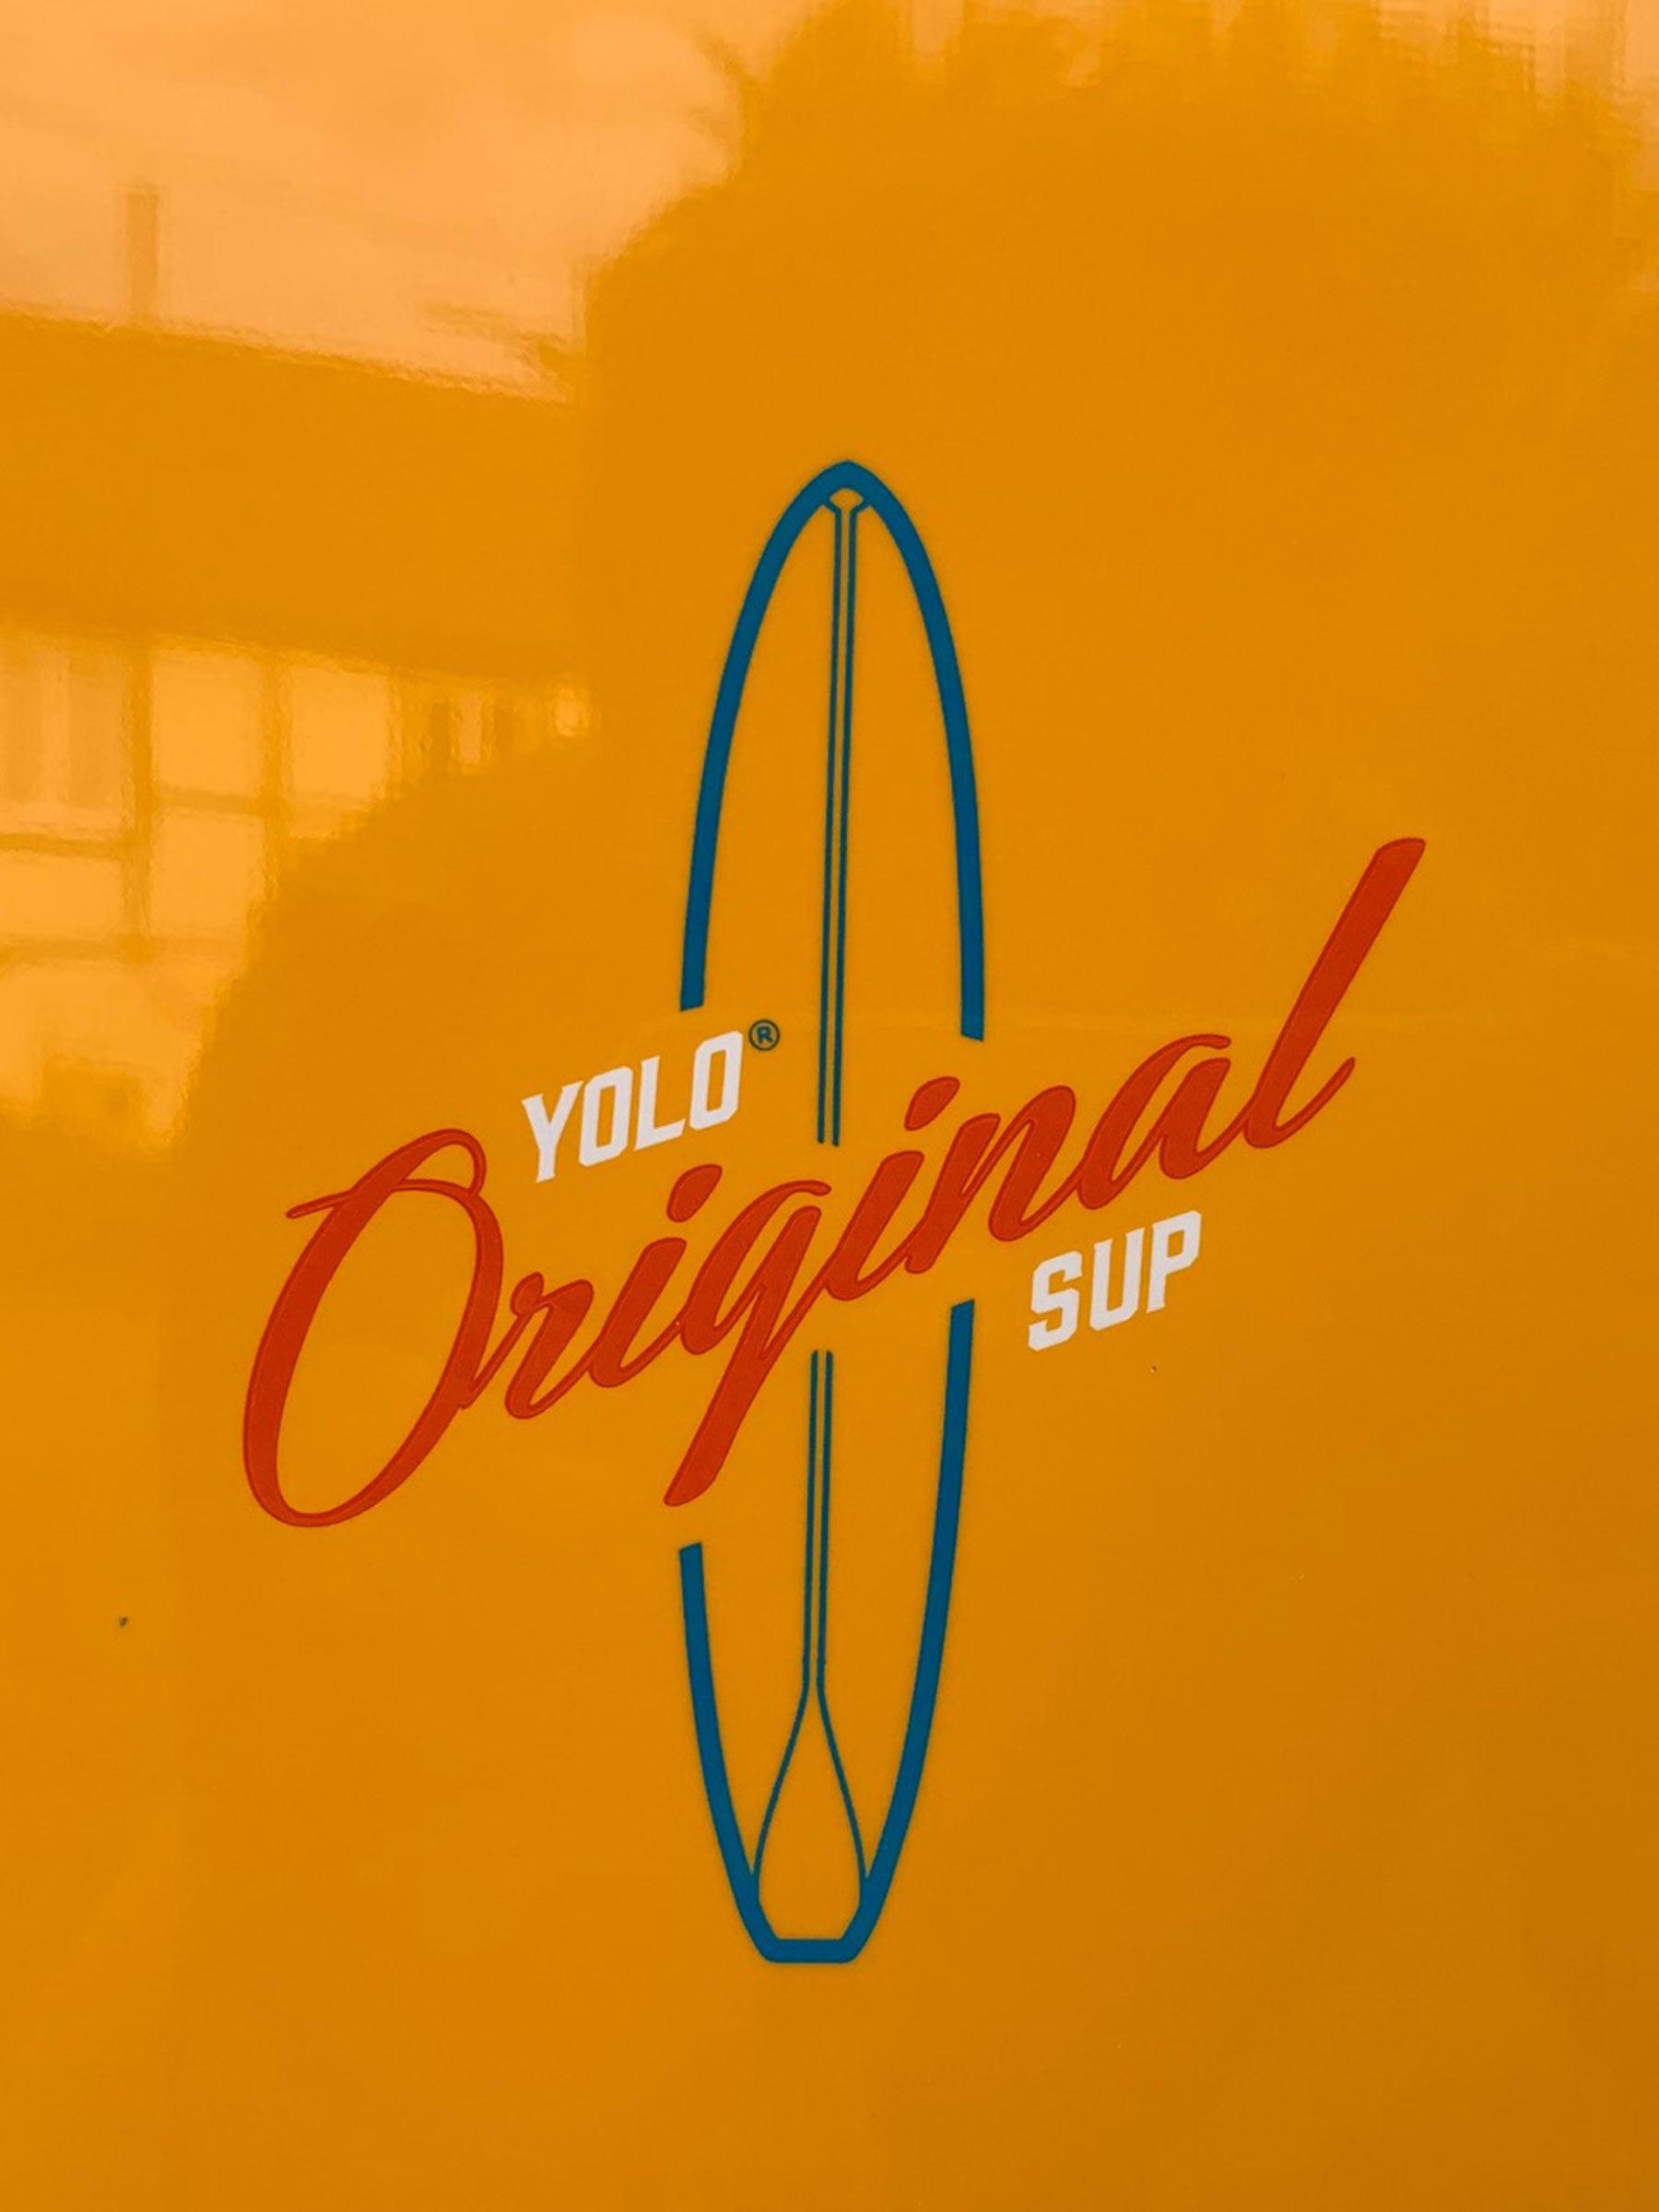 Produktbild von SUP " Pirate 10,6" x 31,5" " der Marke Yoloboard für 1275.00 €. Erhältlich online bei Lite Venture ( www.liteventure.de )